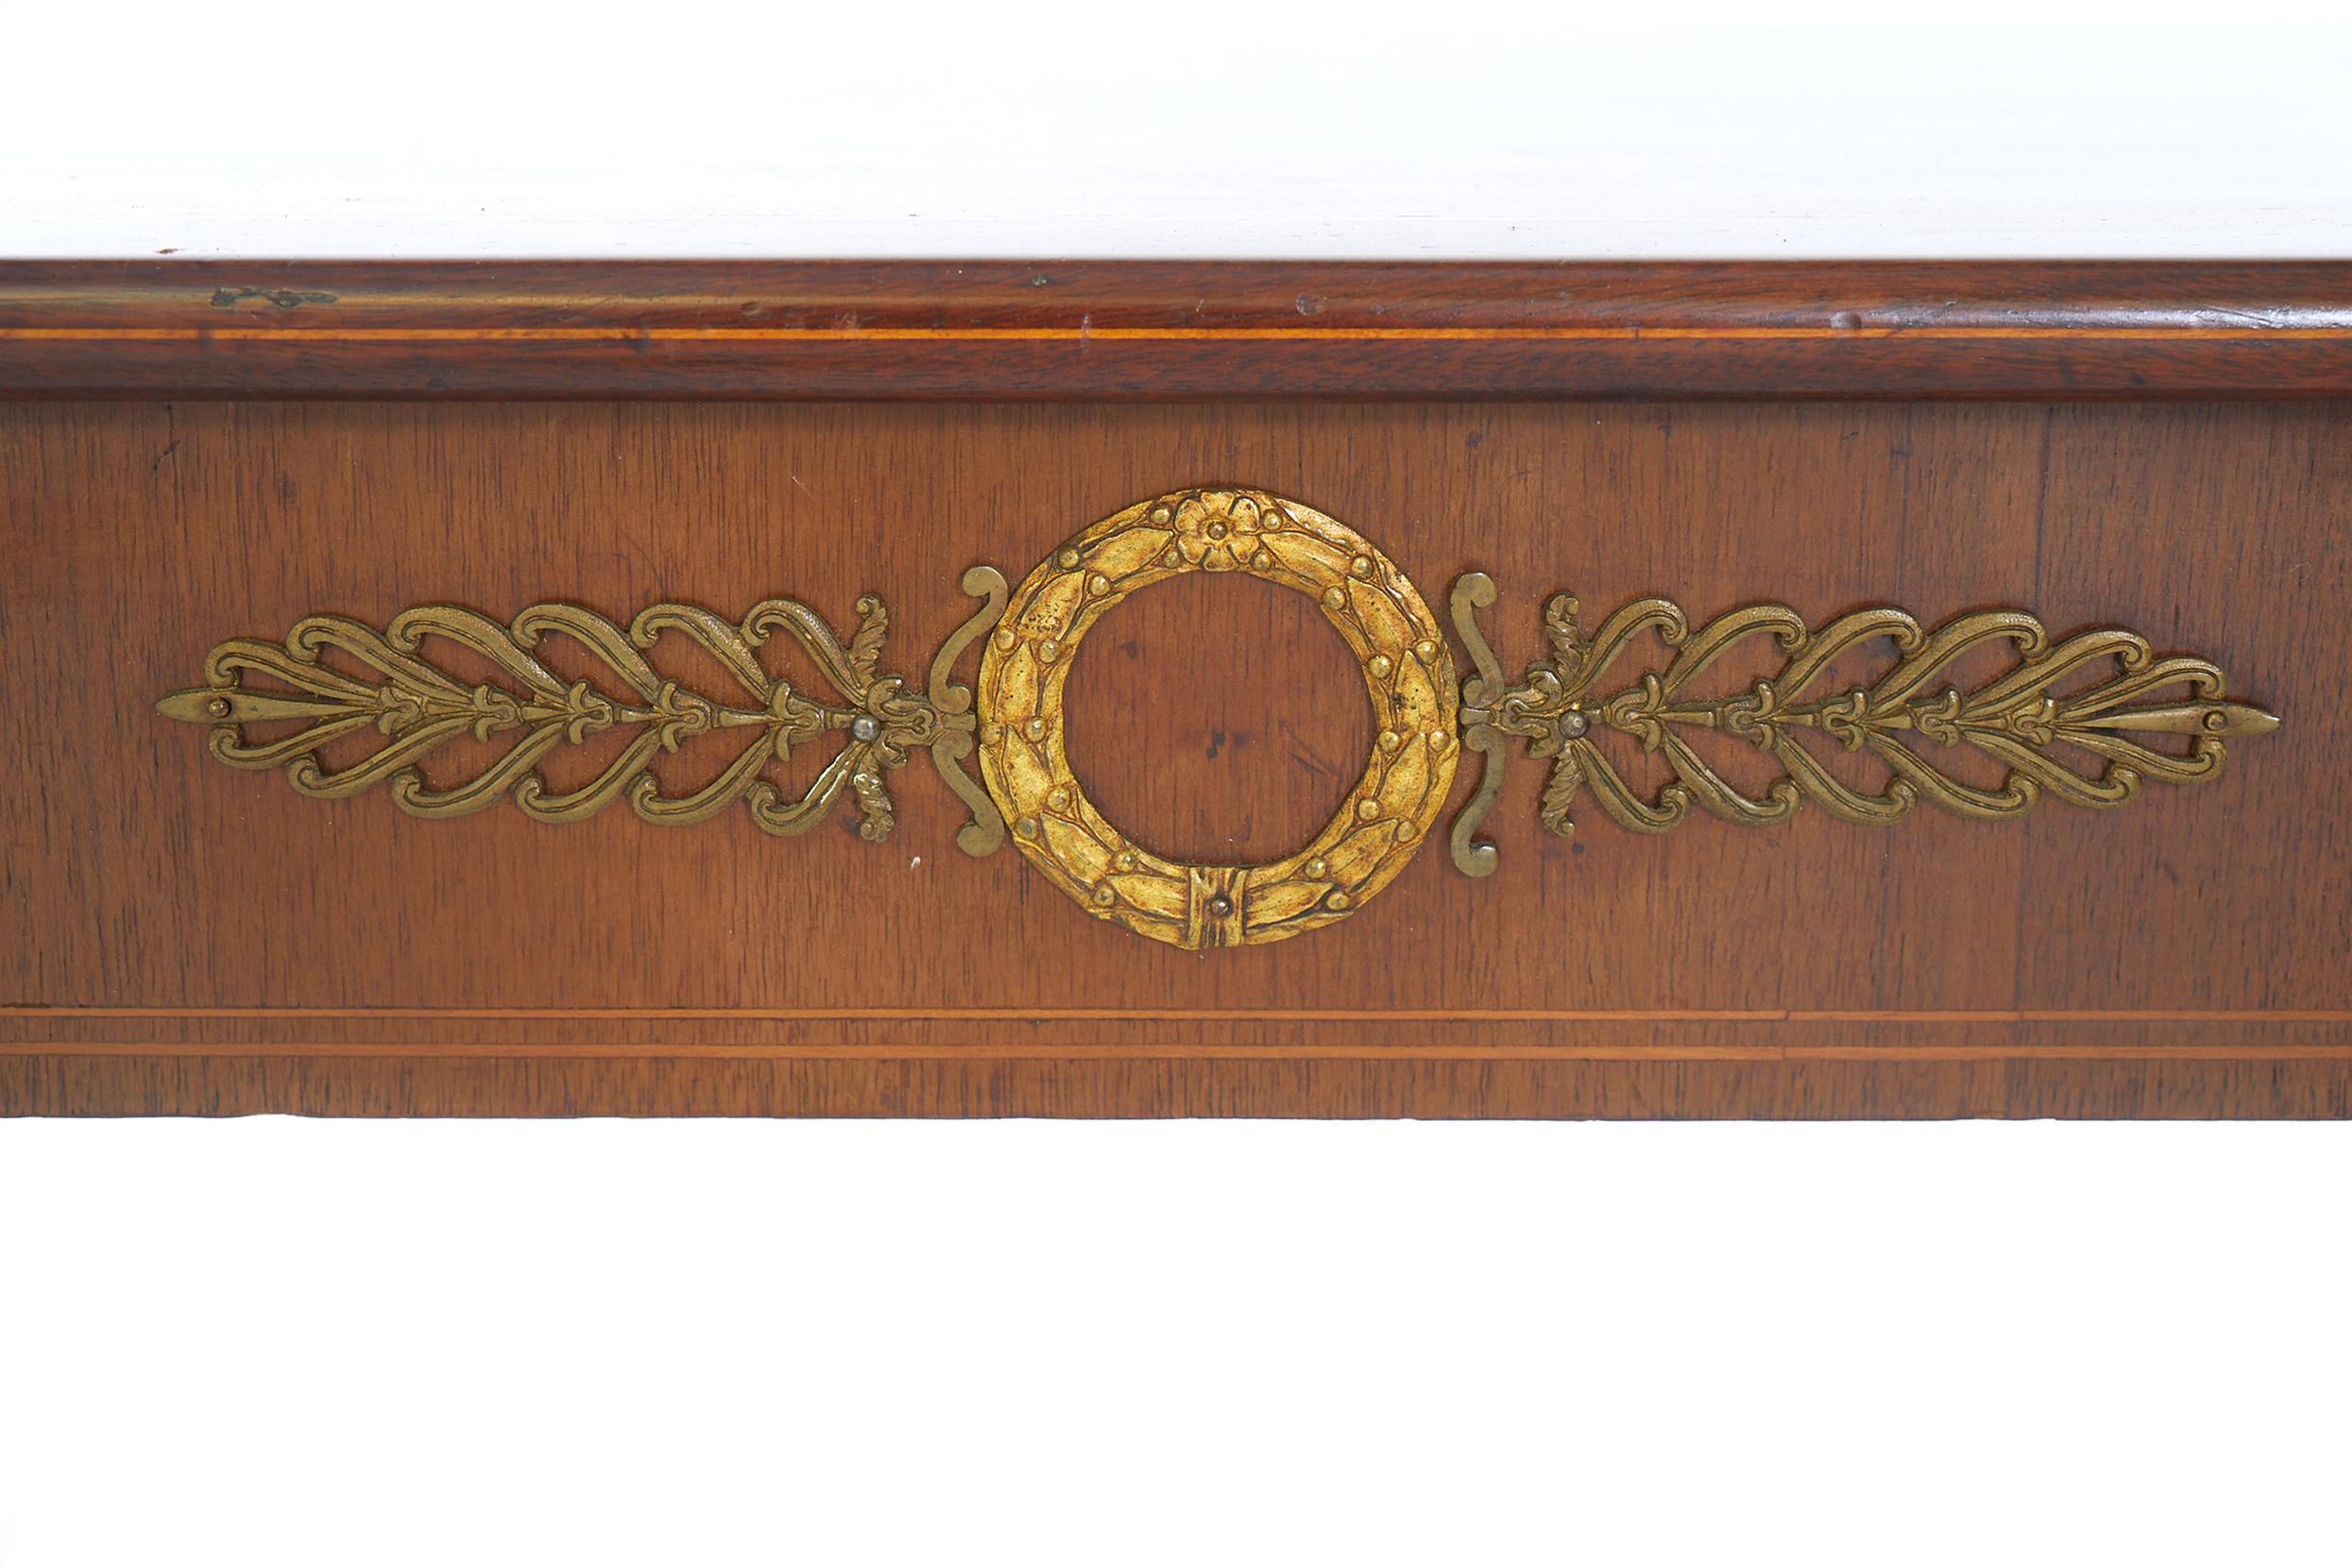 Spätes 19. Jahrhundert Französisch klassischen Stil Mahagoni Holz Pier / Konsole Tisch mit Außen Bronze montiert und Inlay Top-Details. Der Pfeilertisch ist in gutem Zustand. Leichte alters- und gebrauchsbedingte Abnutzung. Maße: Der Tisch steht